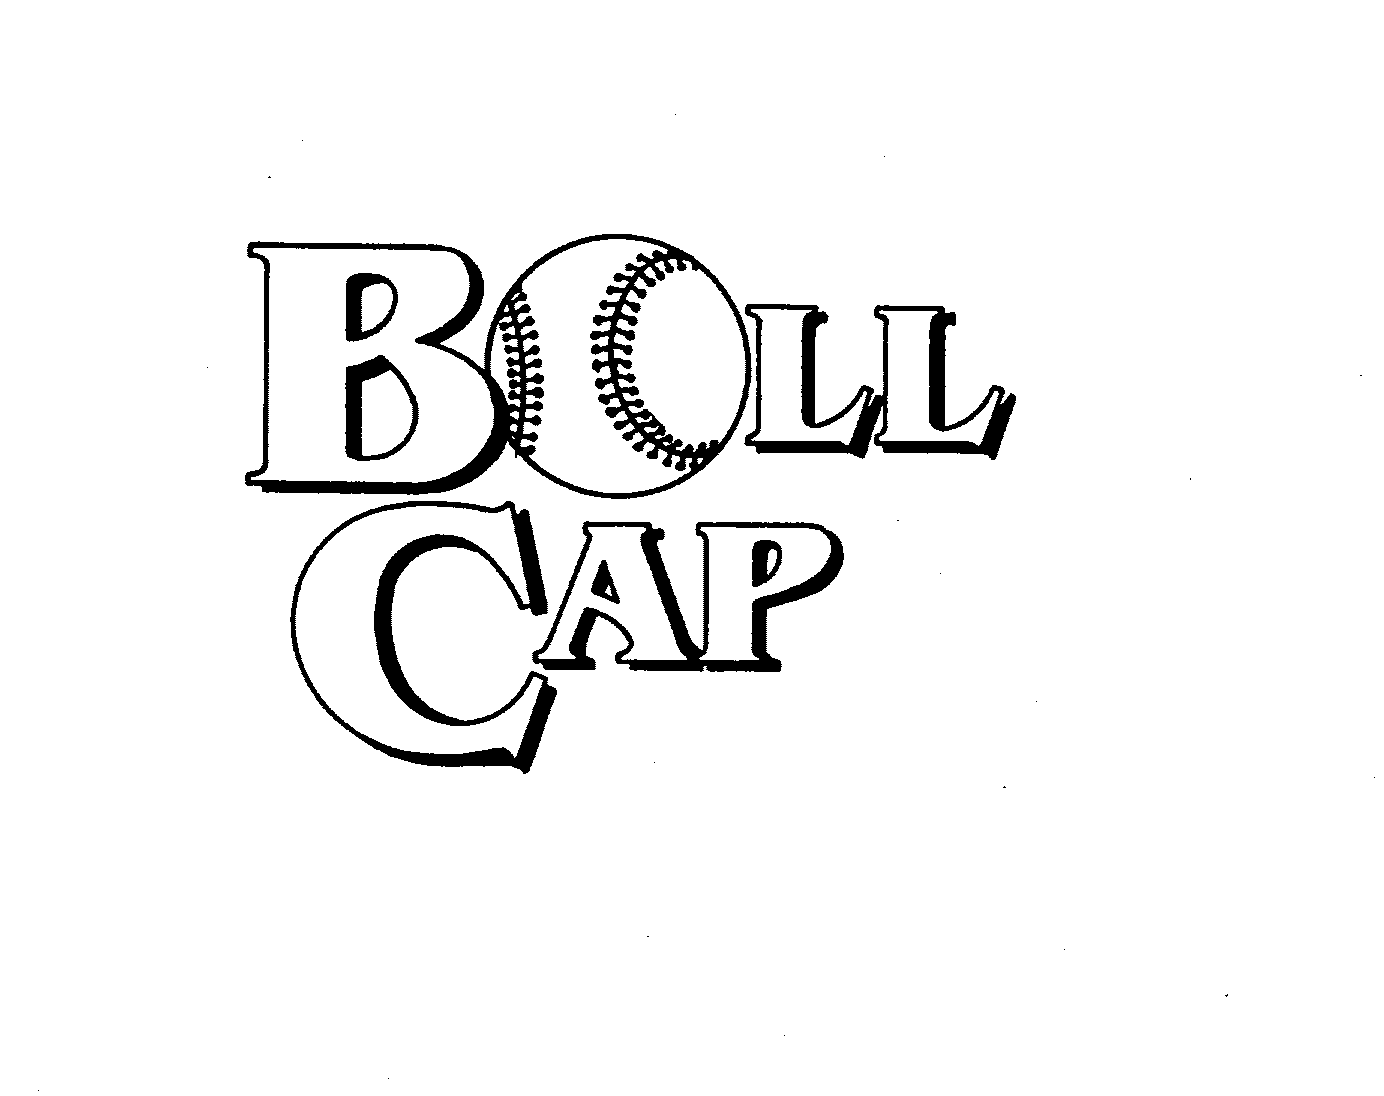  BALL CAP